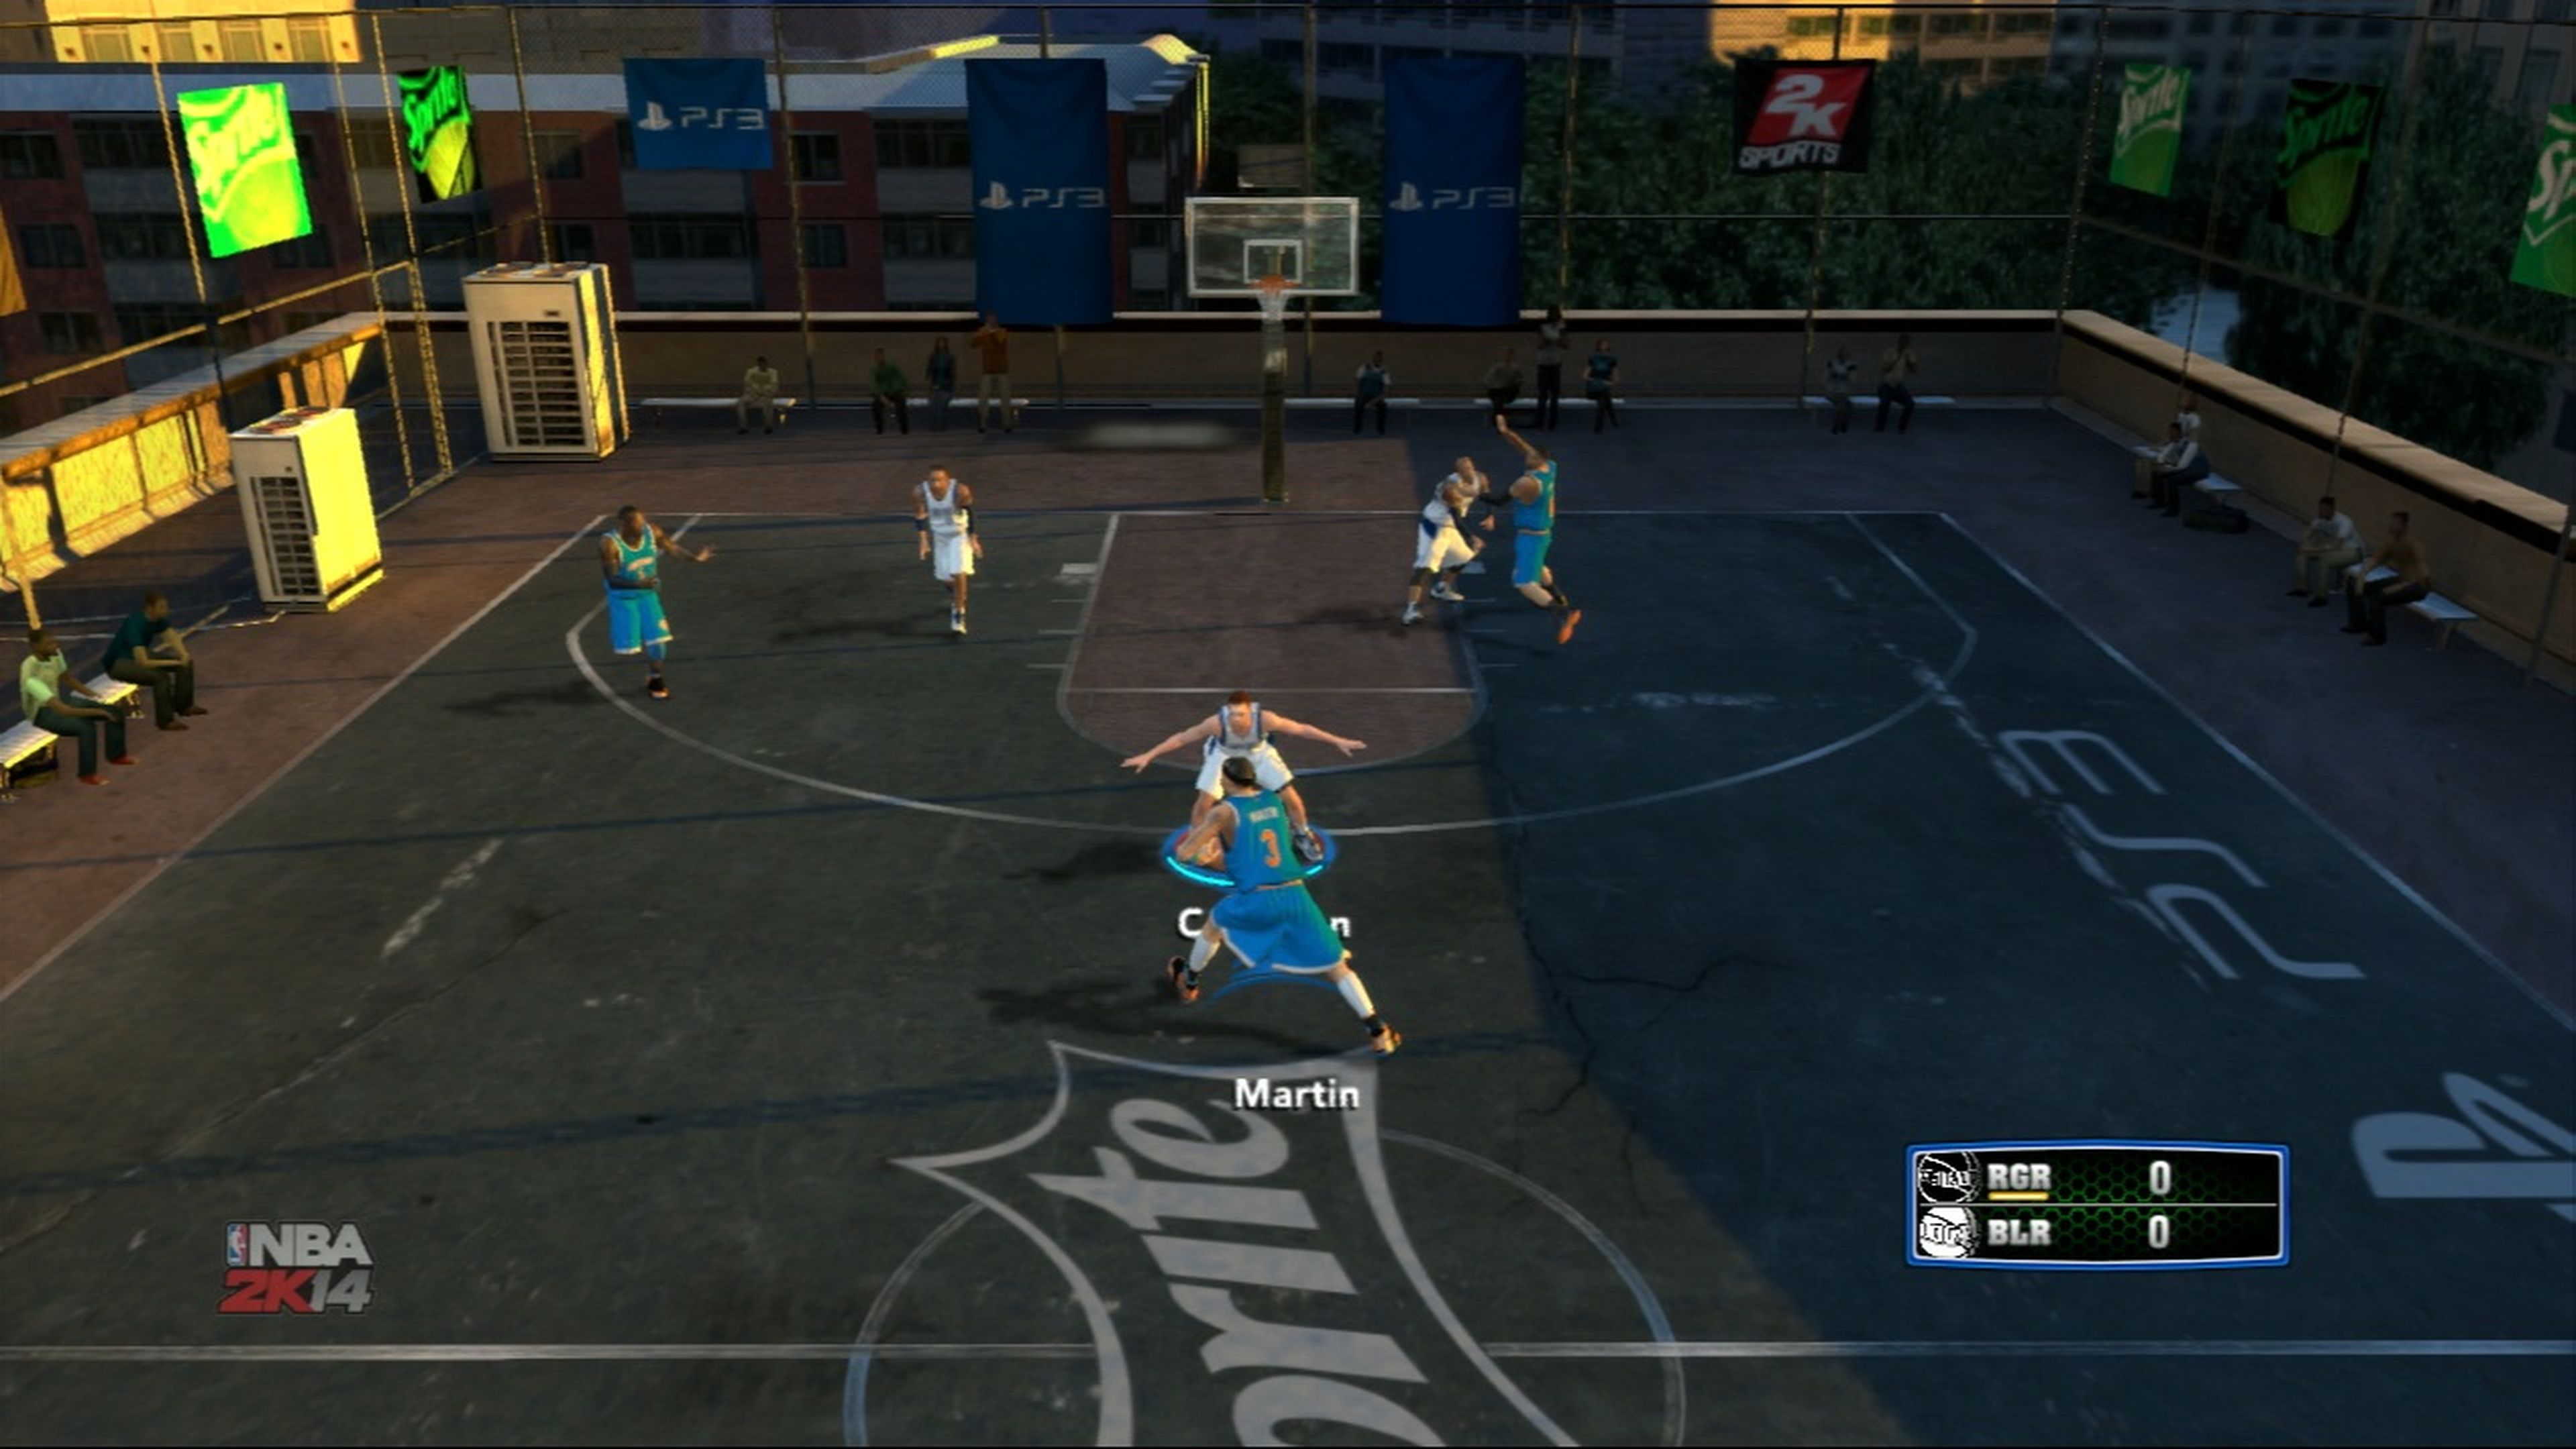 Análisis de NBA 2K14 para PS3, Xbox 360 y PC